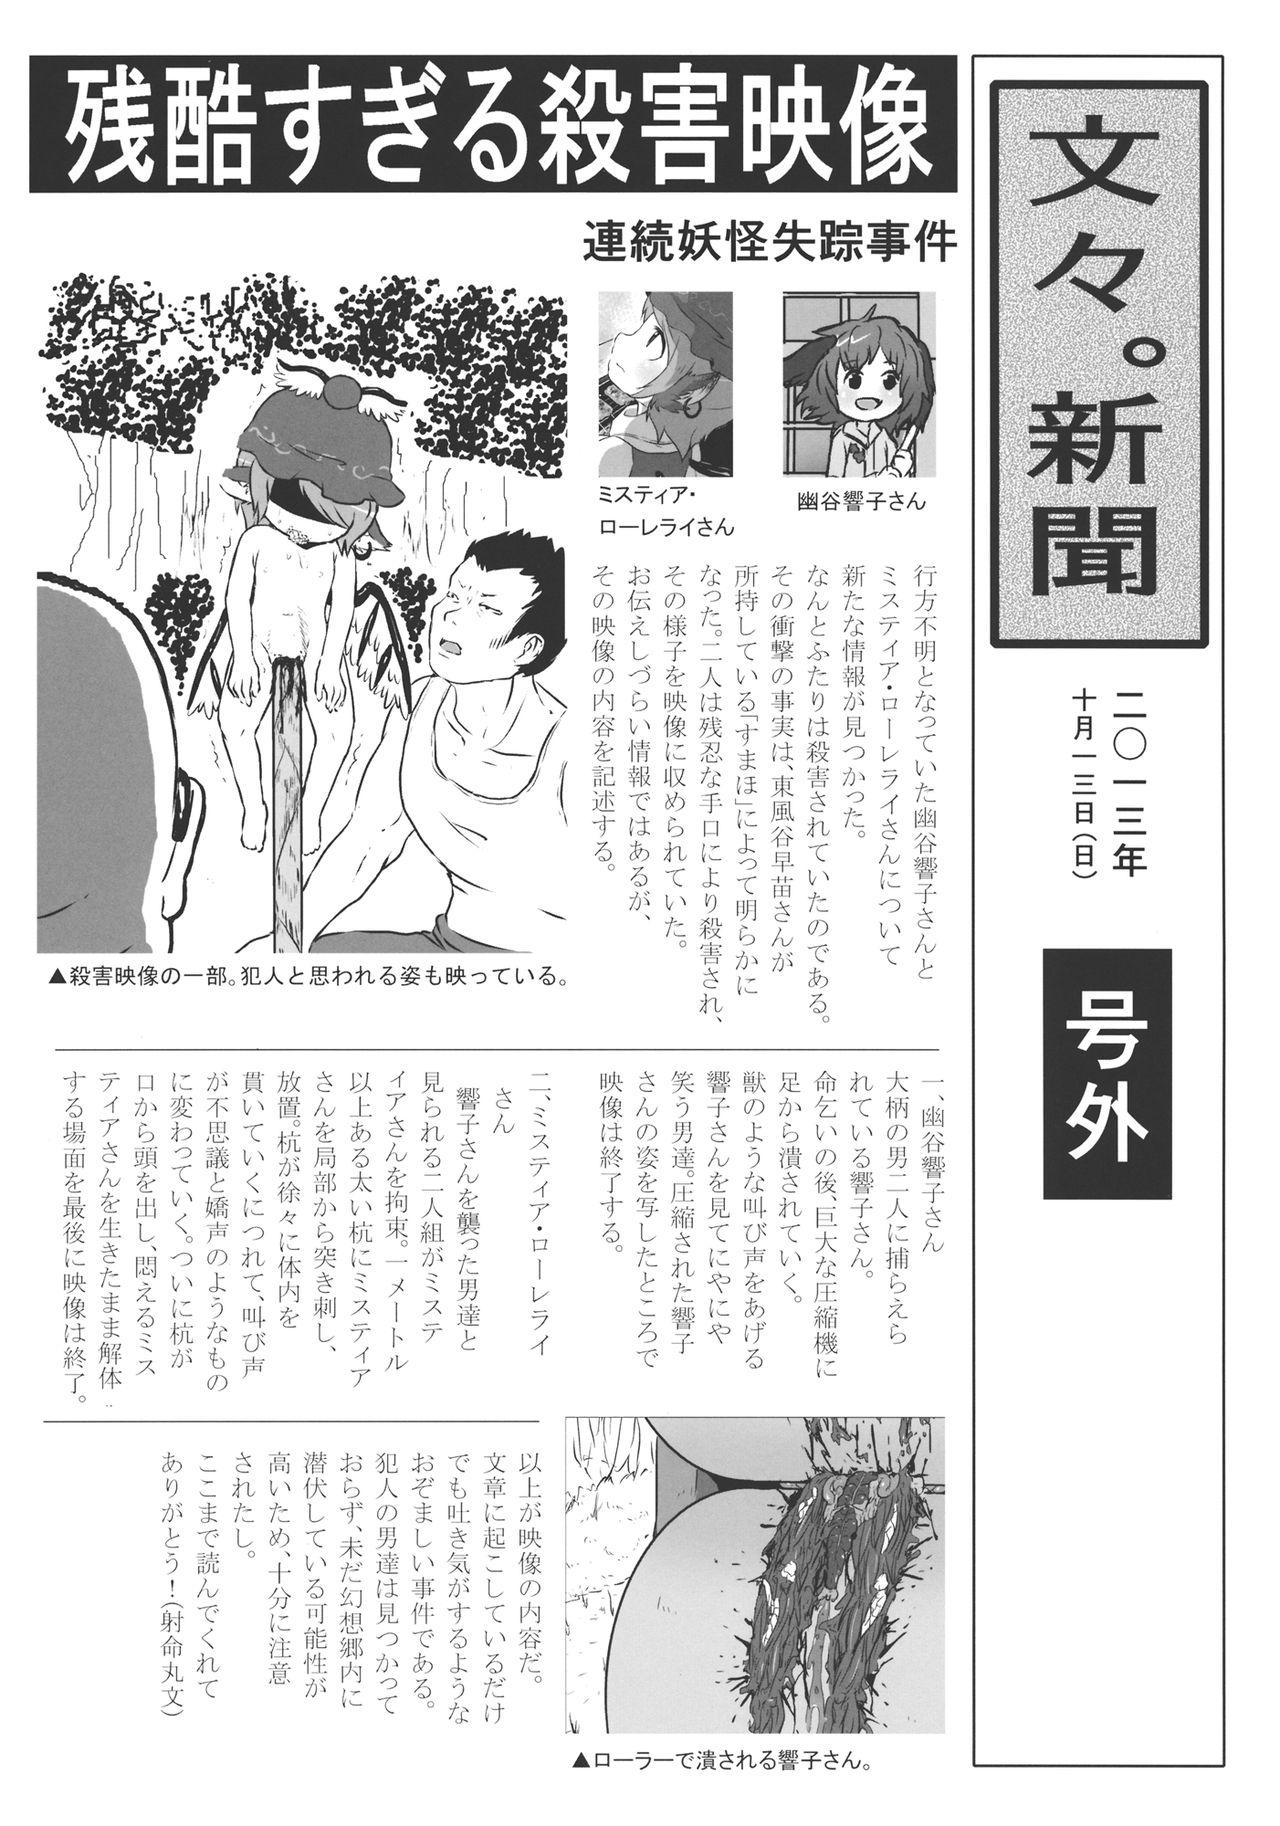 Pale (Kouroumu 9) [02 (Harasaki)] (Kojin Satsuei)(Touhou)(Kouroumu 9)[02] Touhou snuff vol.3 Kawashiro Nitori (Mushuusei) (Loli-kei Youjo no Kirei na Hadaka wo Suki Houdai shichai mashita!).avi (Touhou Project) [布洛基个人汉化] - Touhou project Amateur Asia - Page 4